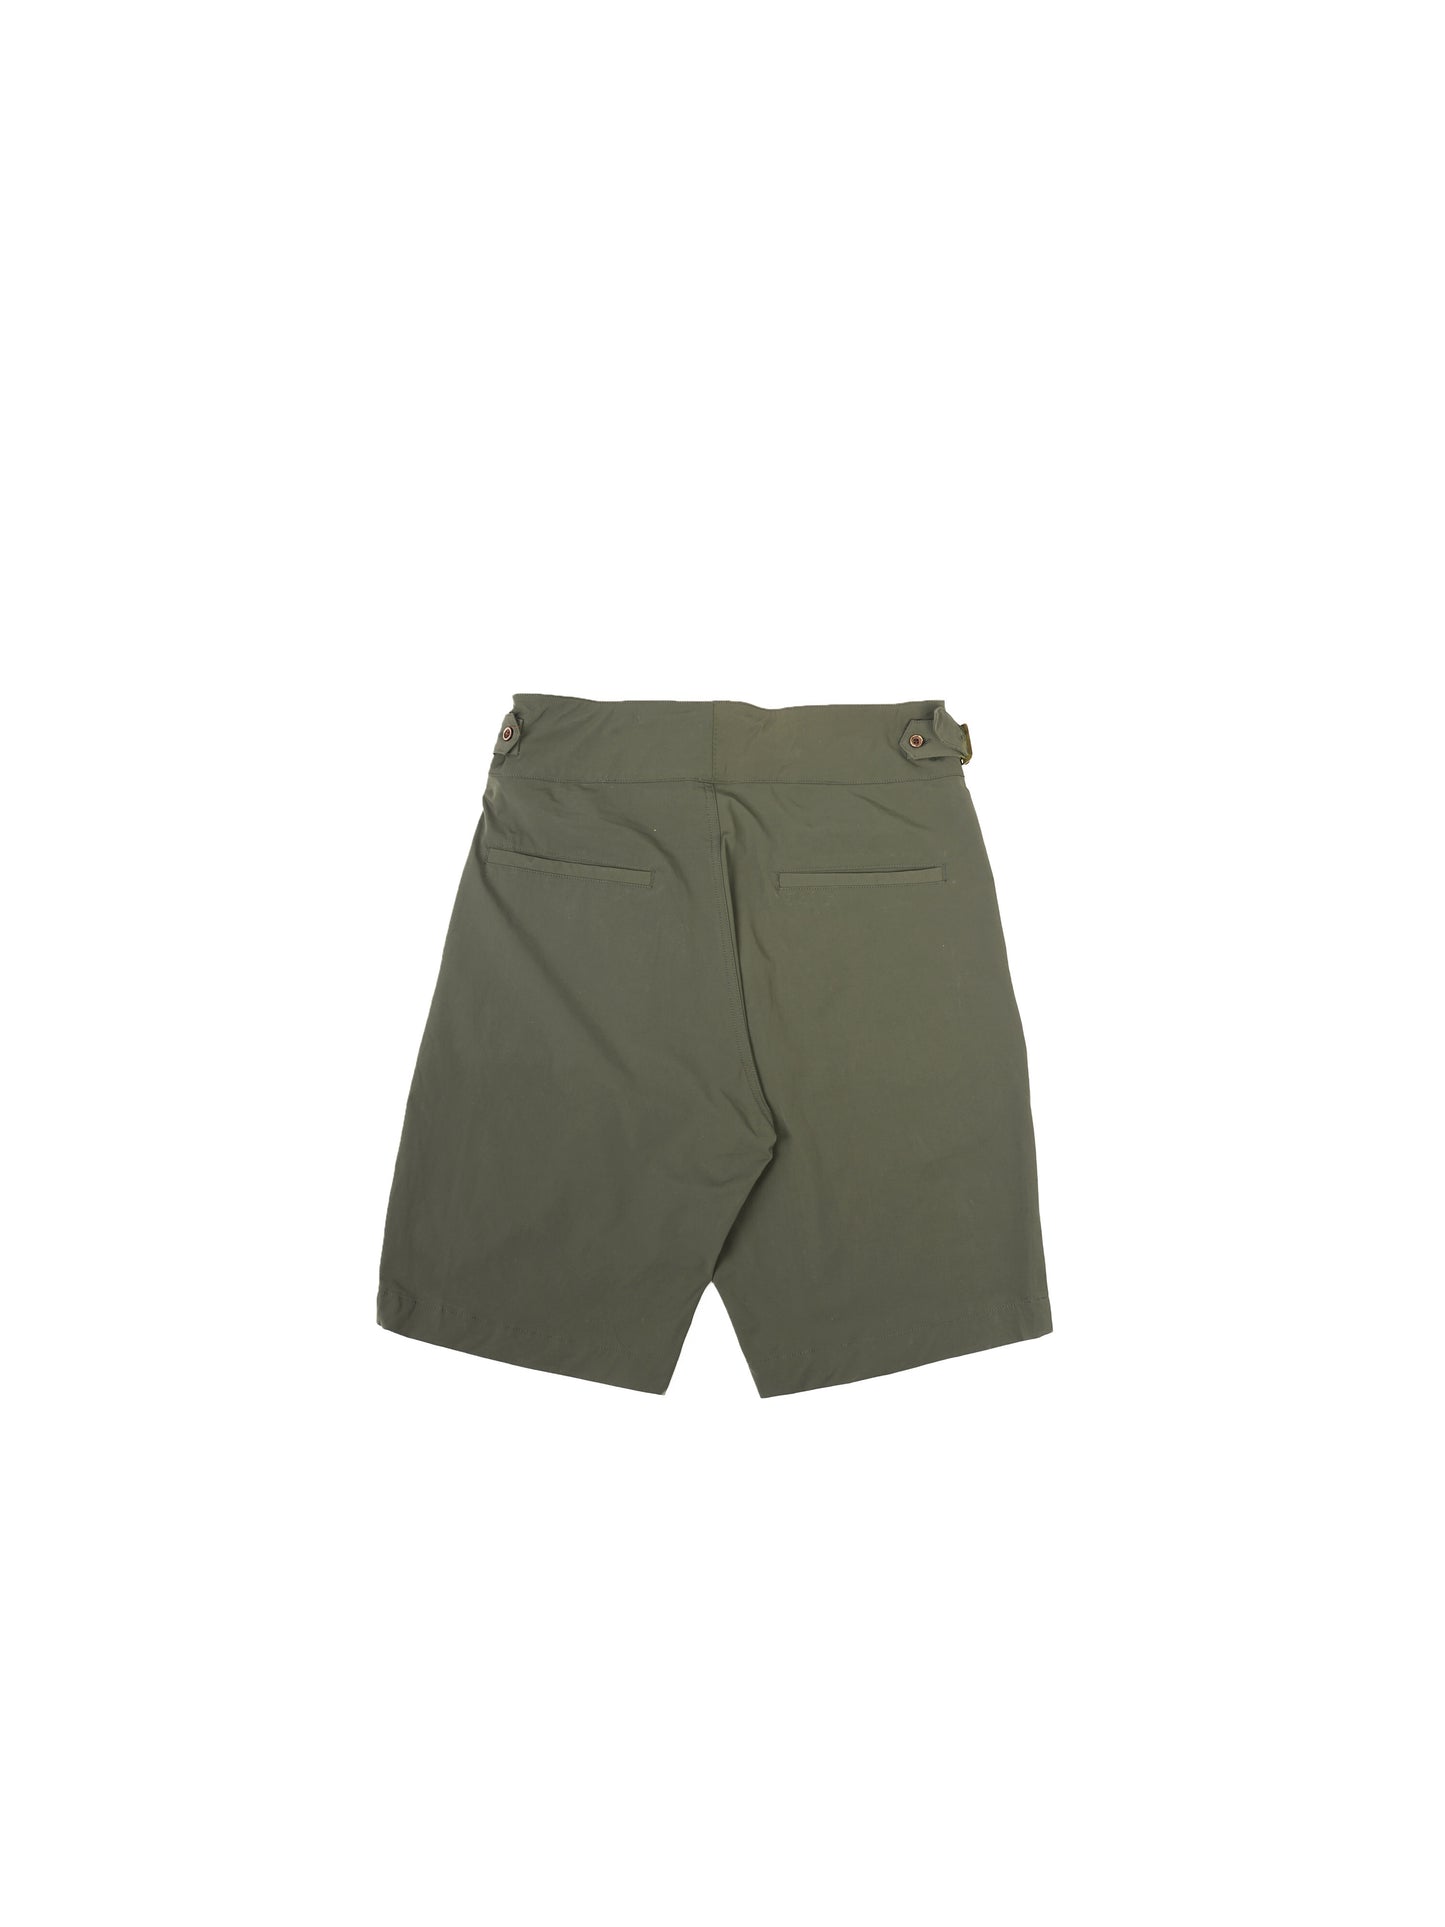 RG16 Gurkha Shorts 啹喀高腰短褲